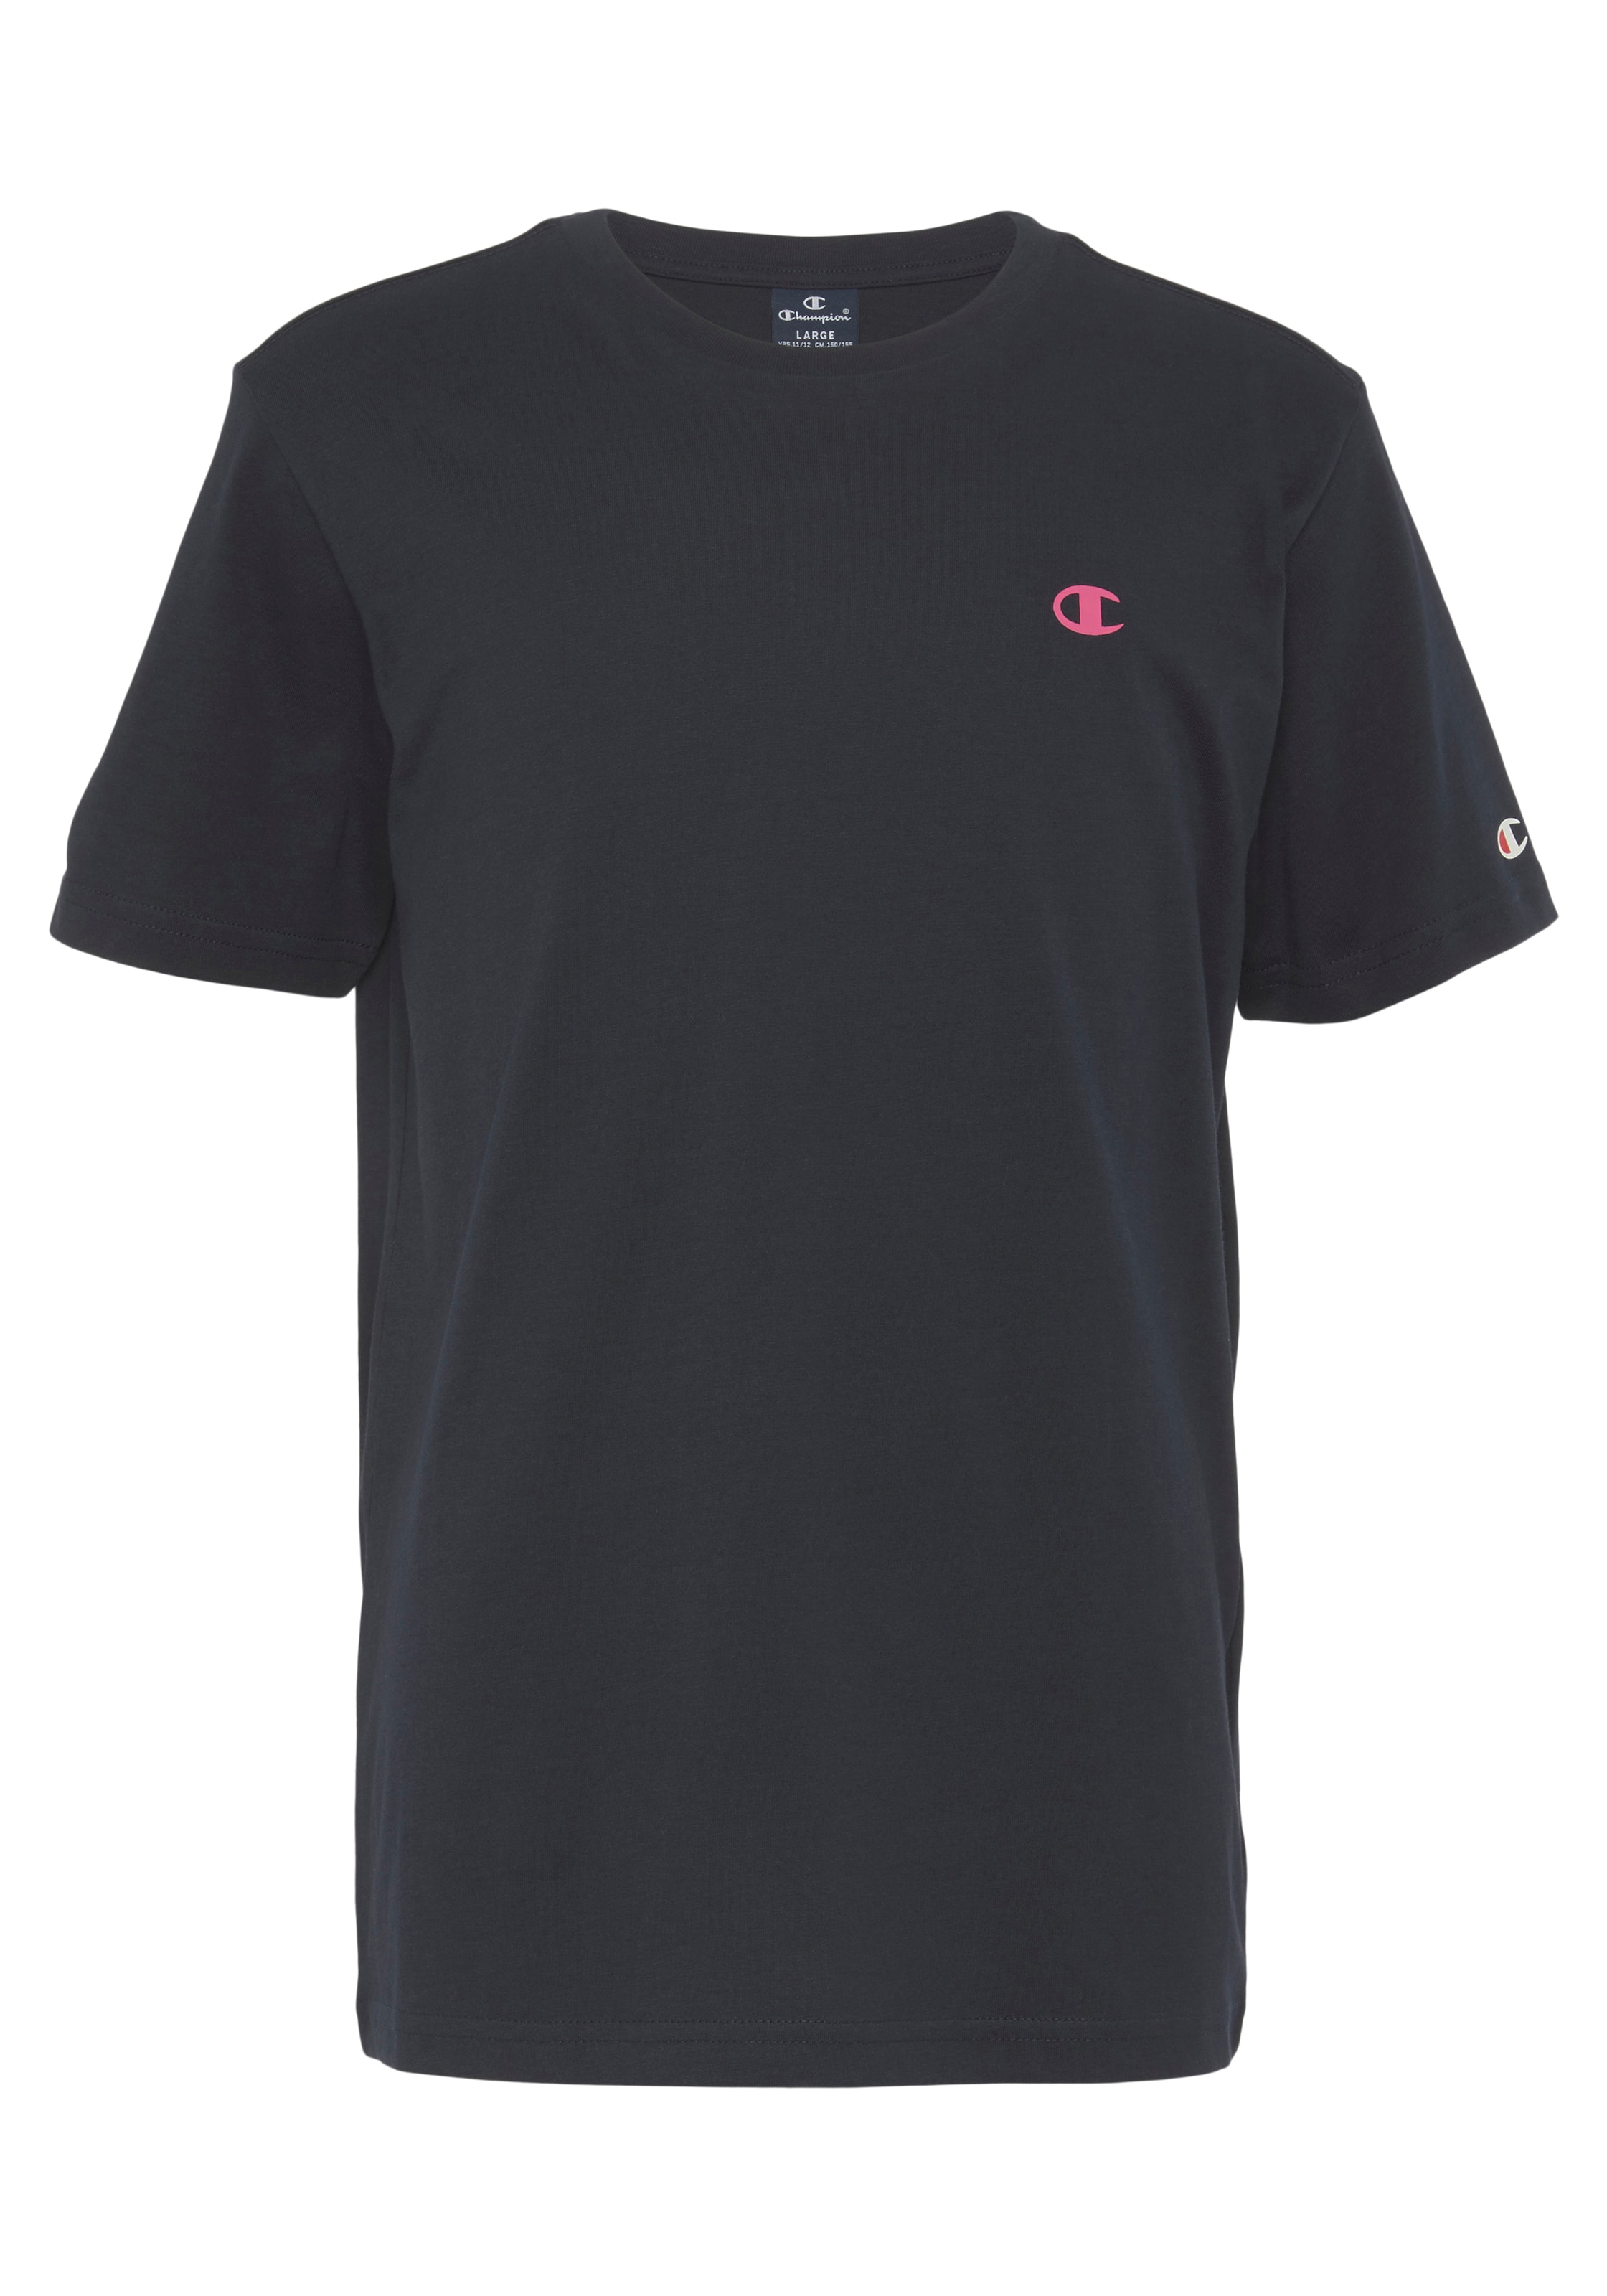 »Crewneck Champion T-Shirt Kinder« - bei OTTO T-Shirt für